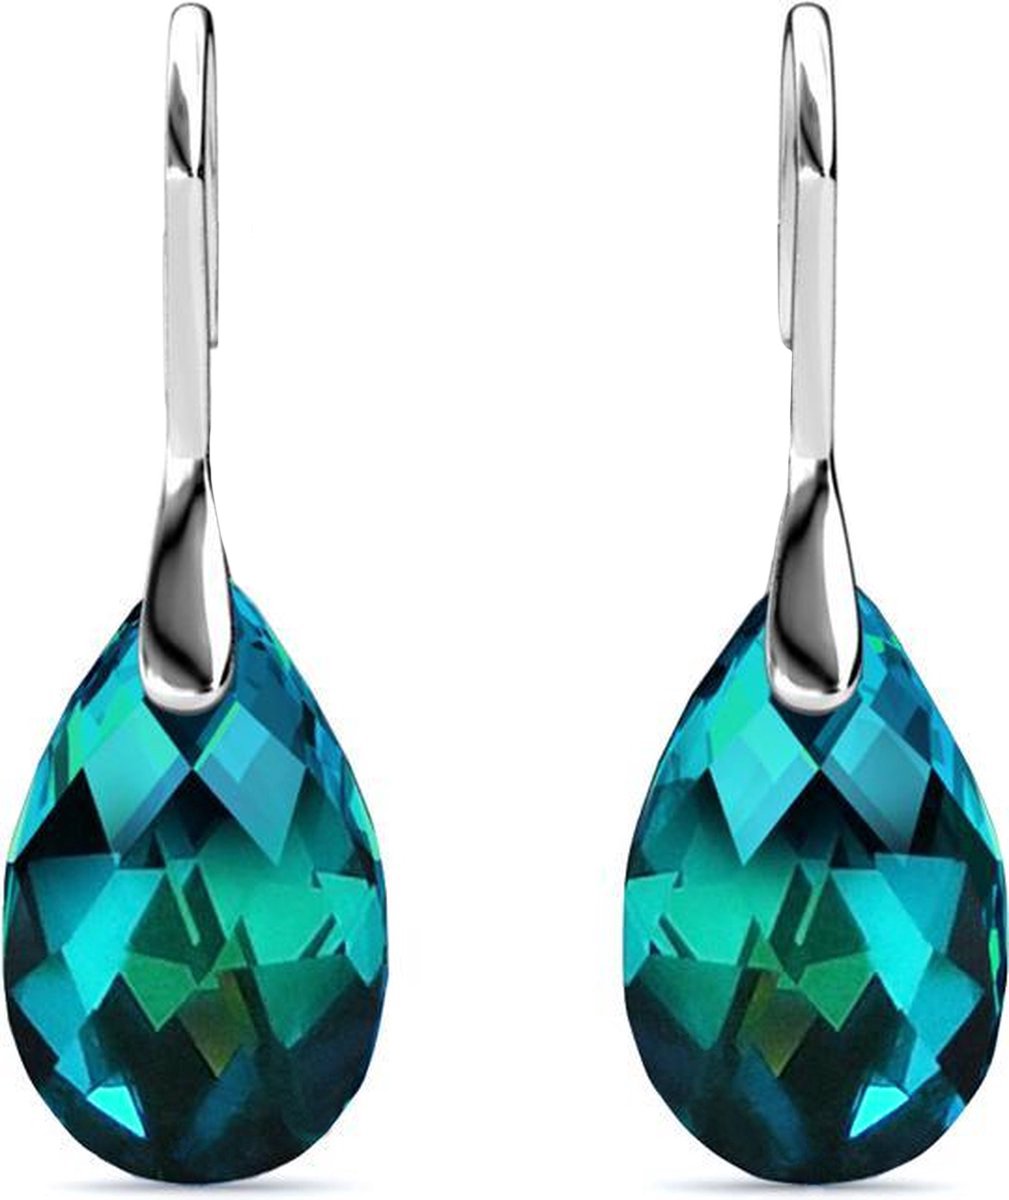 Shoplace Oorbellen dames met Swarovski kristallen - Druppel - 18K Witgoud verguld - Oorhangers - Swarovski oorbellen - Cadeauverpakking - Blauw/Groen - Moederdag